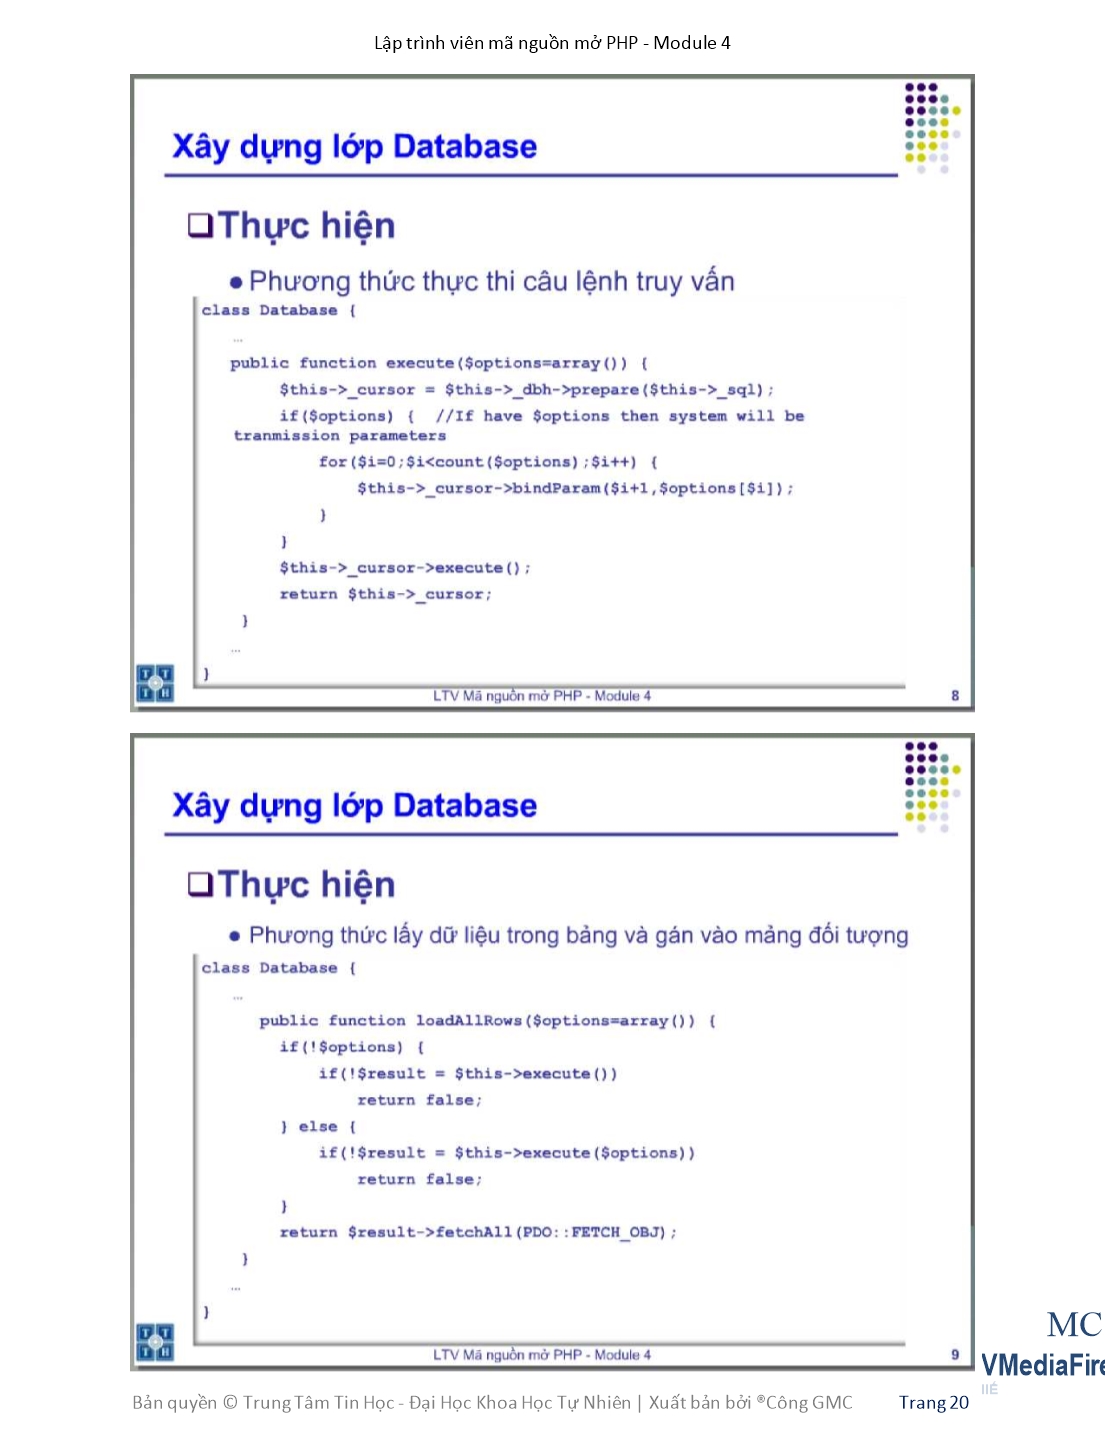 Giáo trình Module 4: Lập trình viên mã nguồn mở PHP - Bài 2: Model trang 5